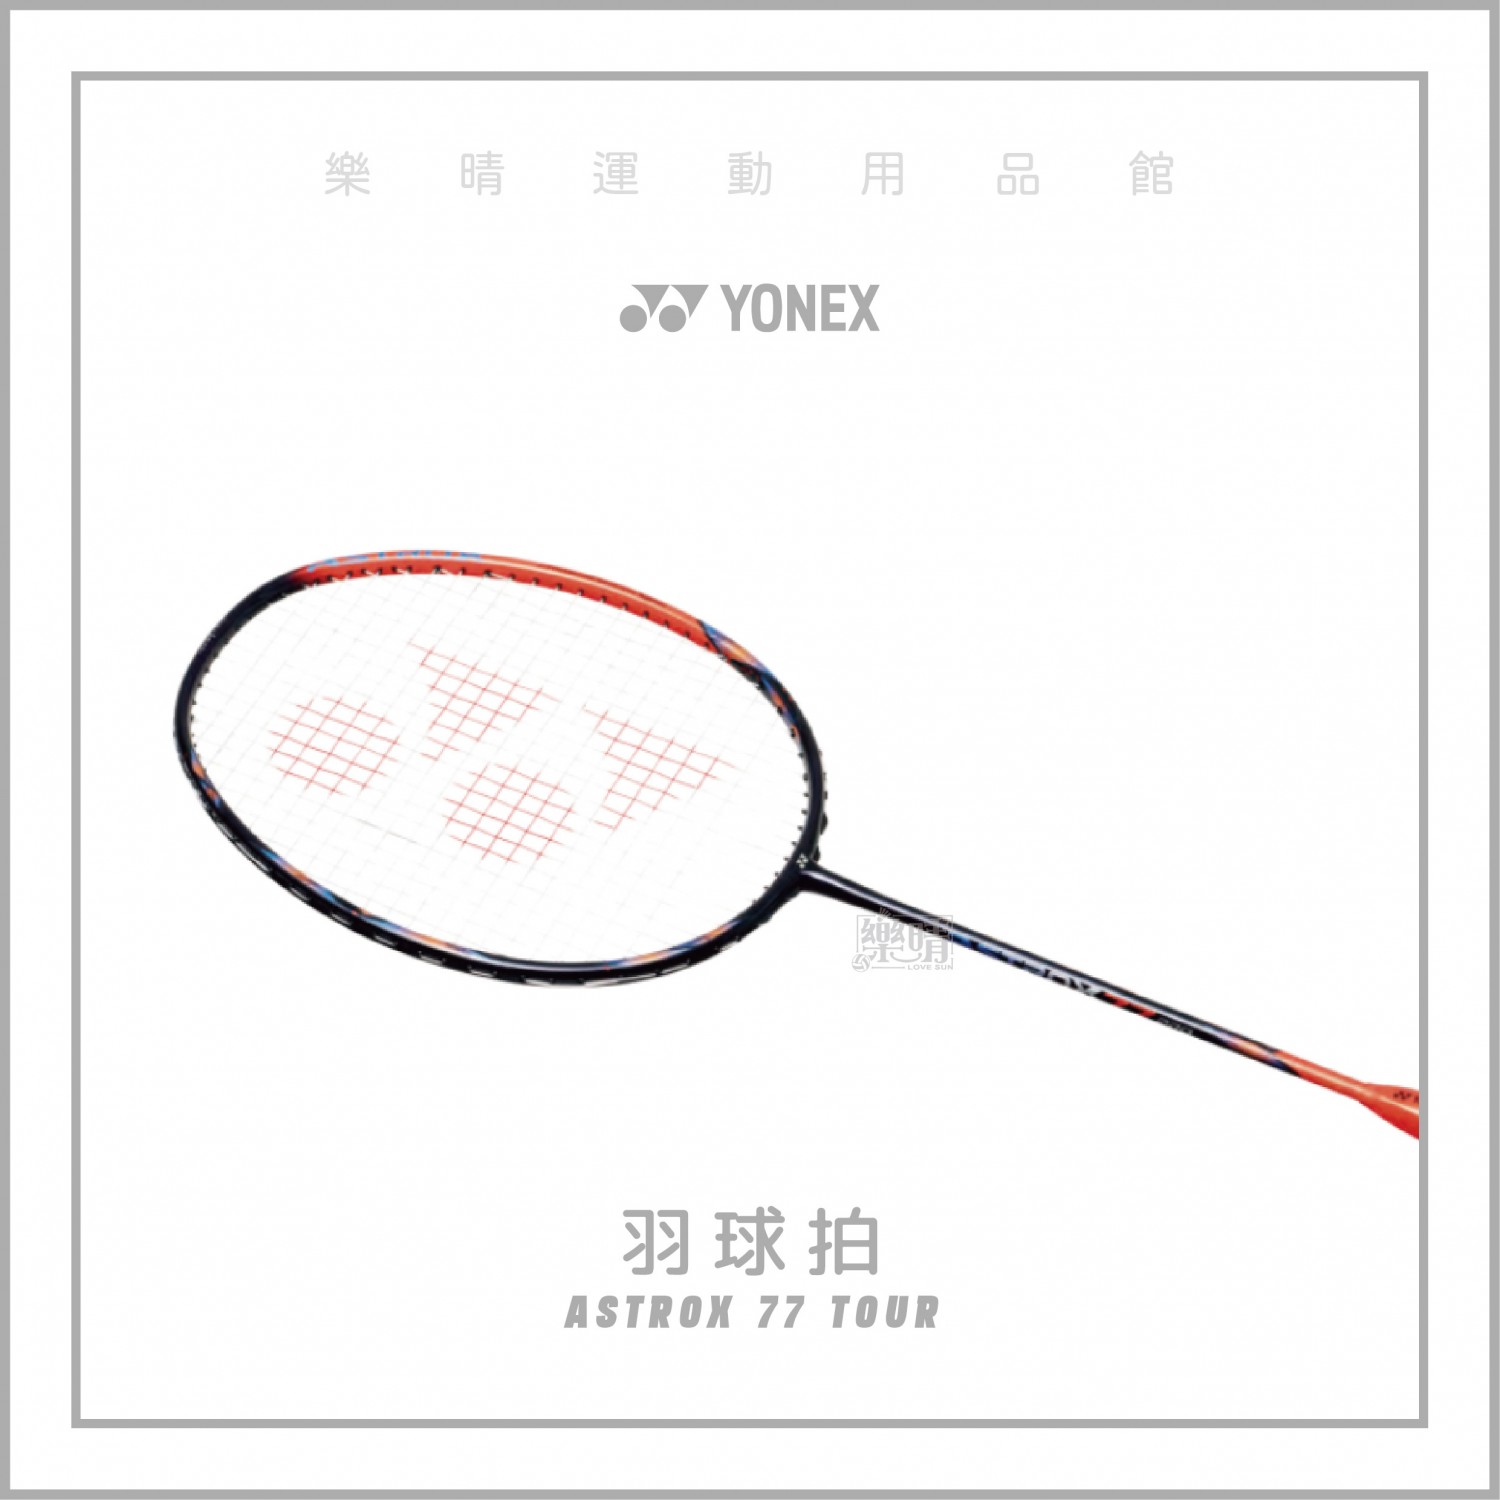 YONEX ASTROX 77 TOUR